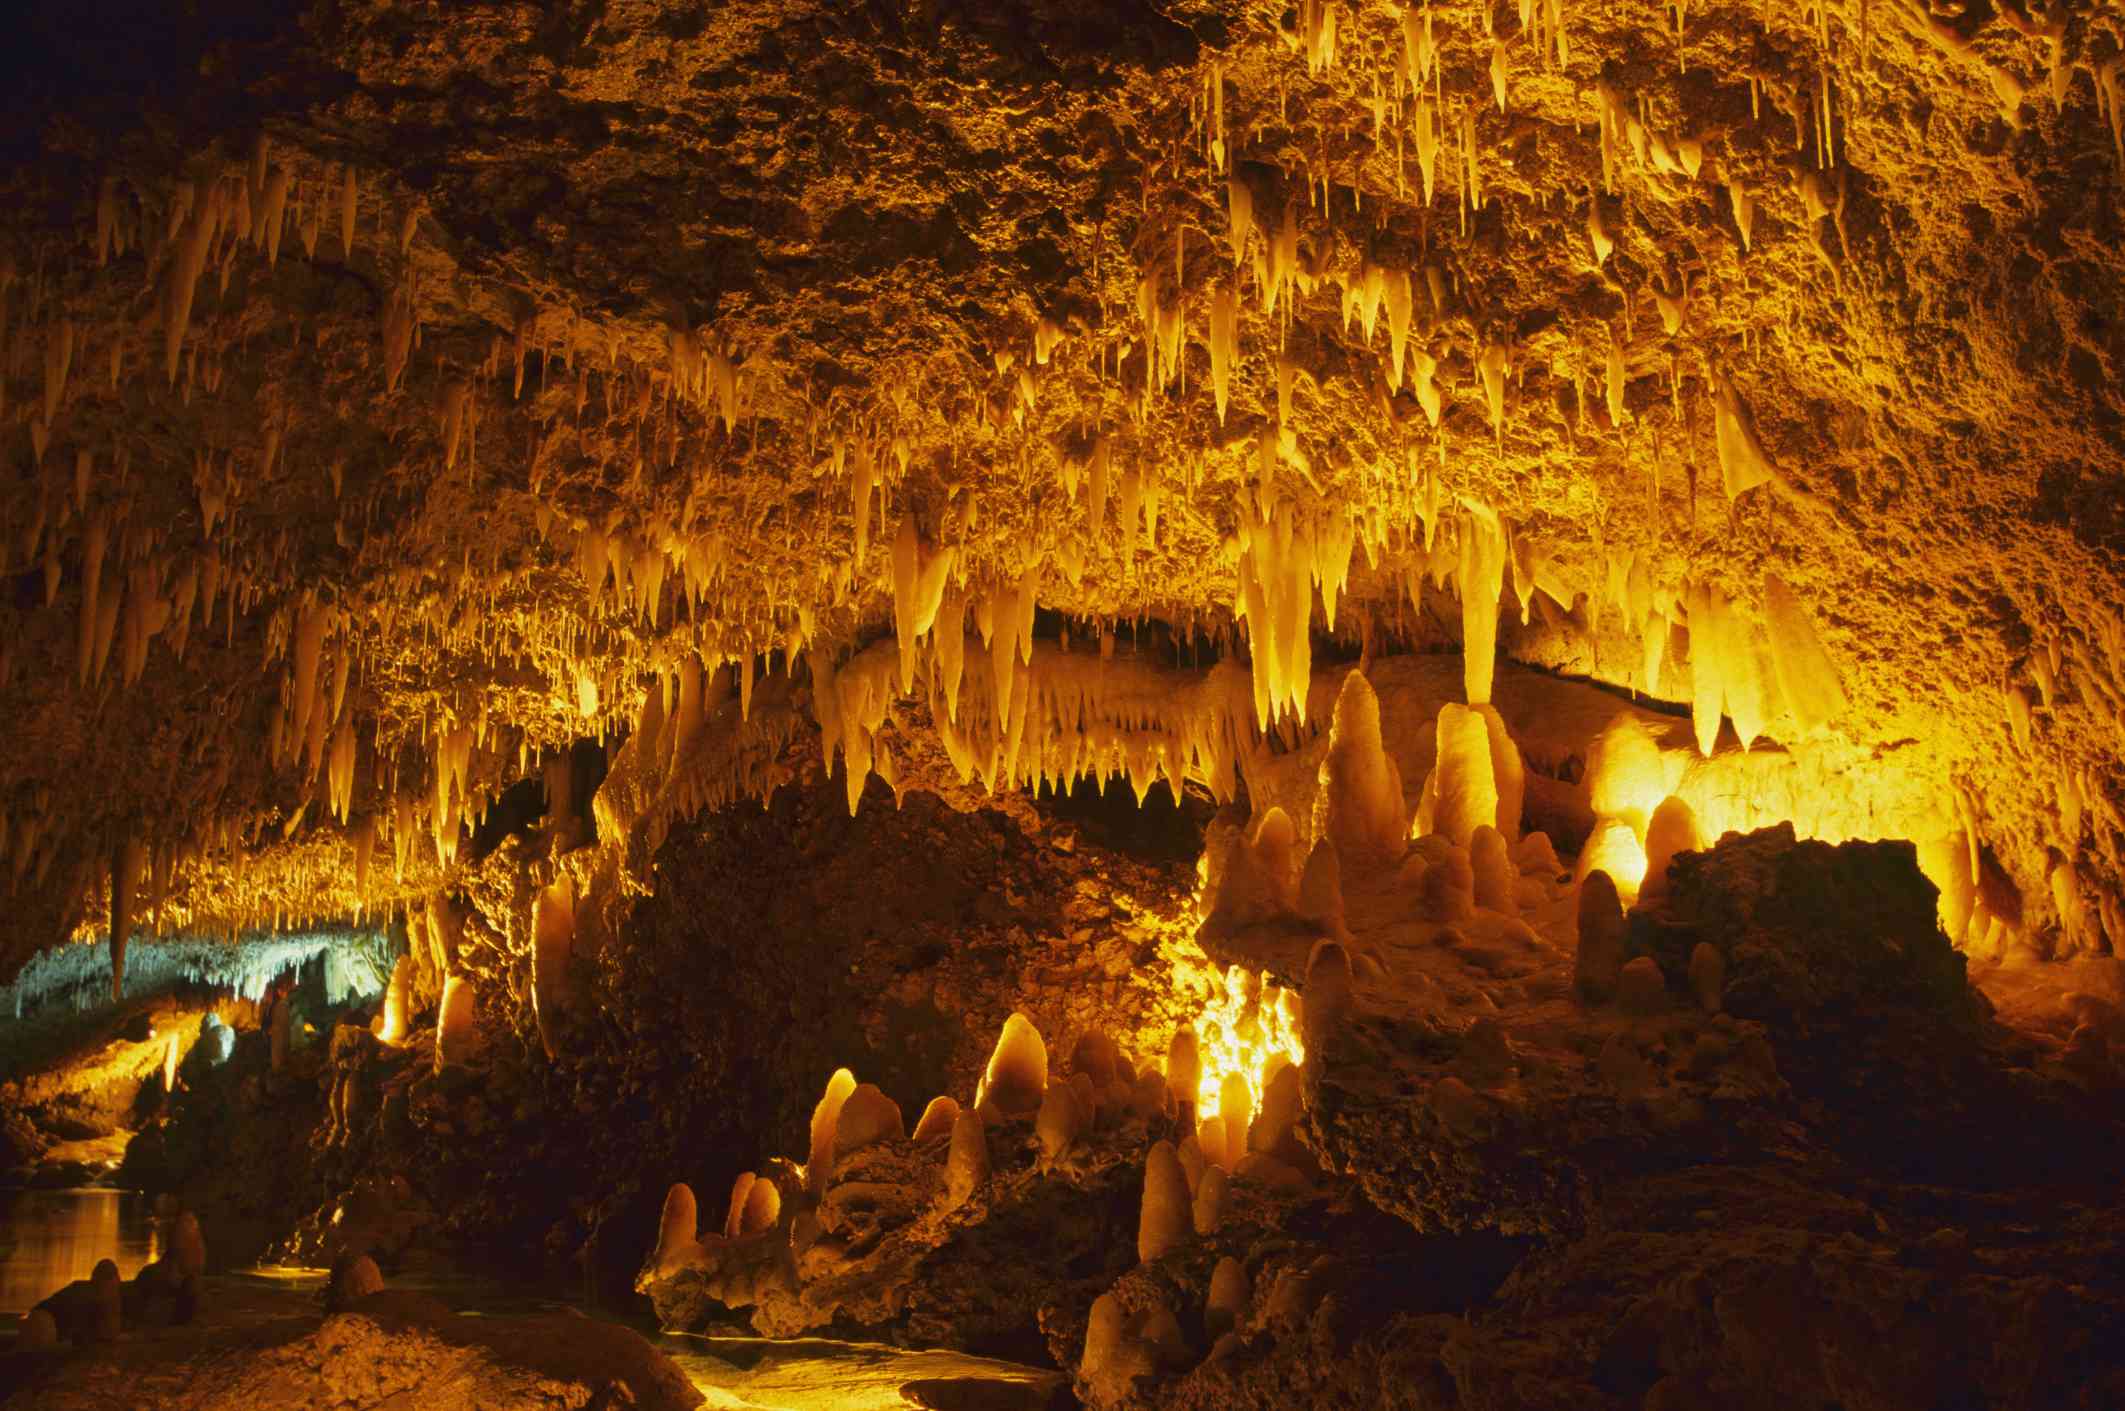 Vista del interior de la Cueva de Harrison con una estalactita iluminada colgando del techo